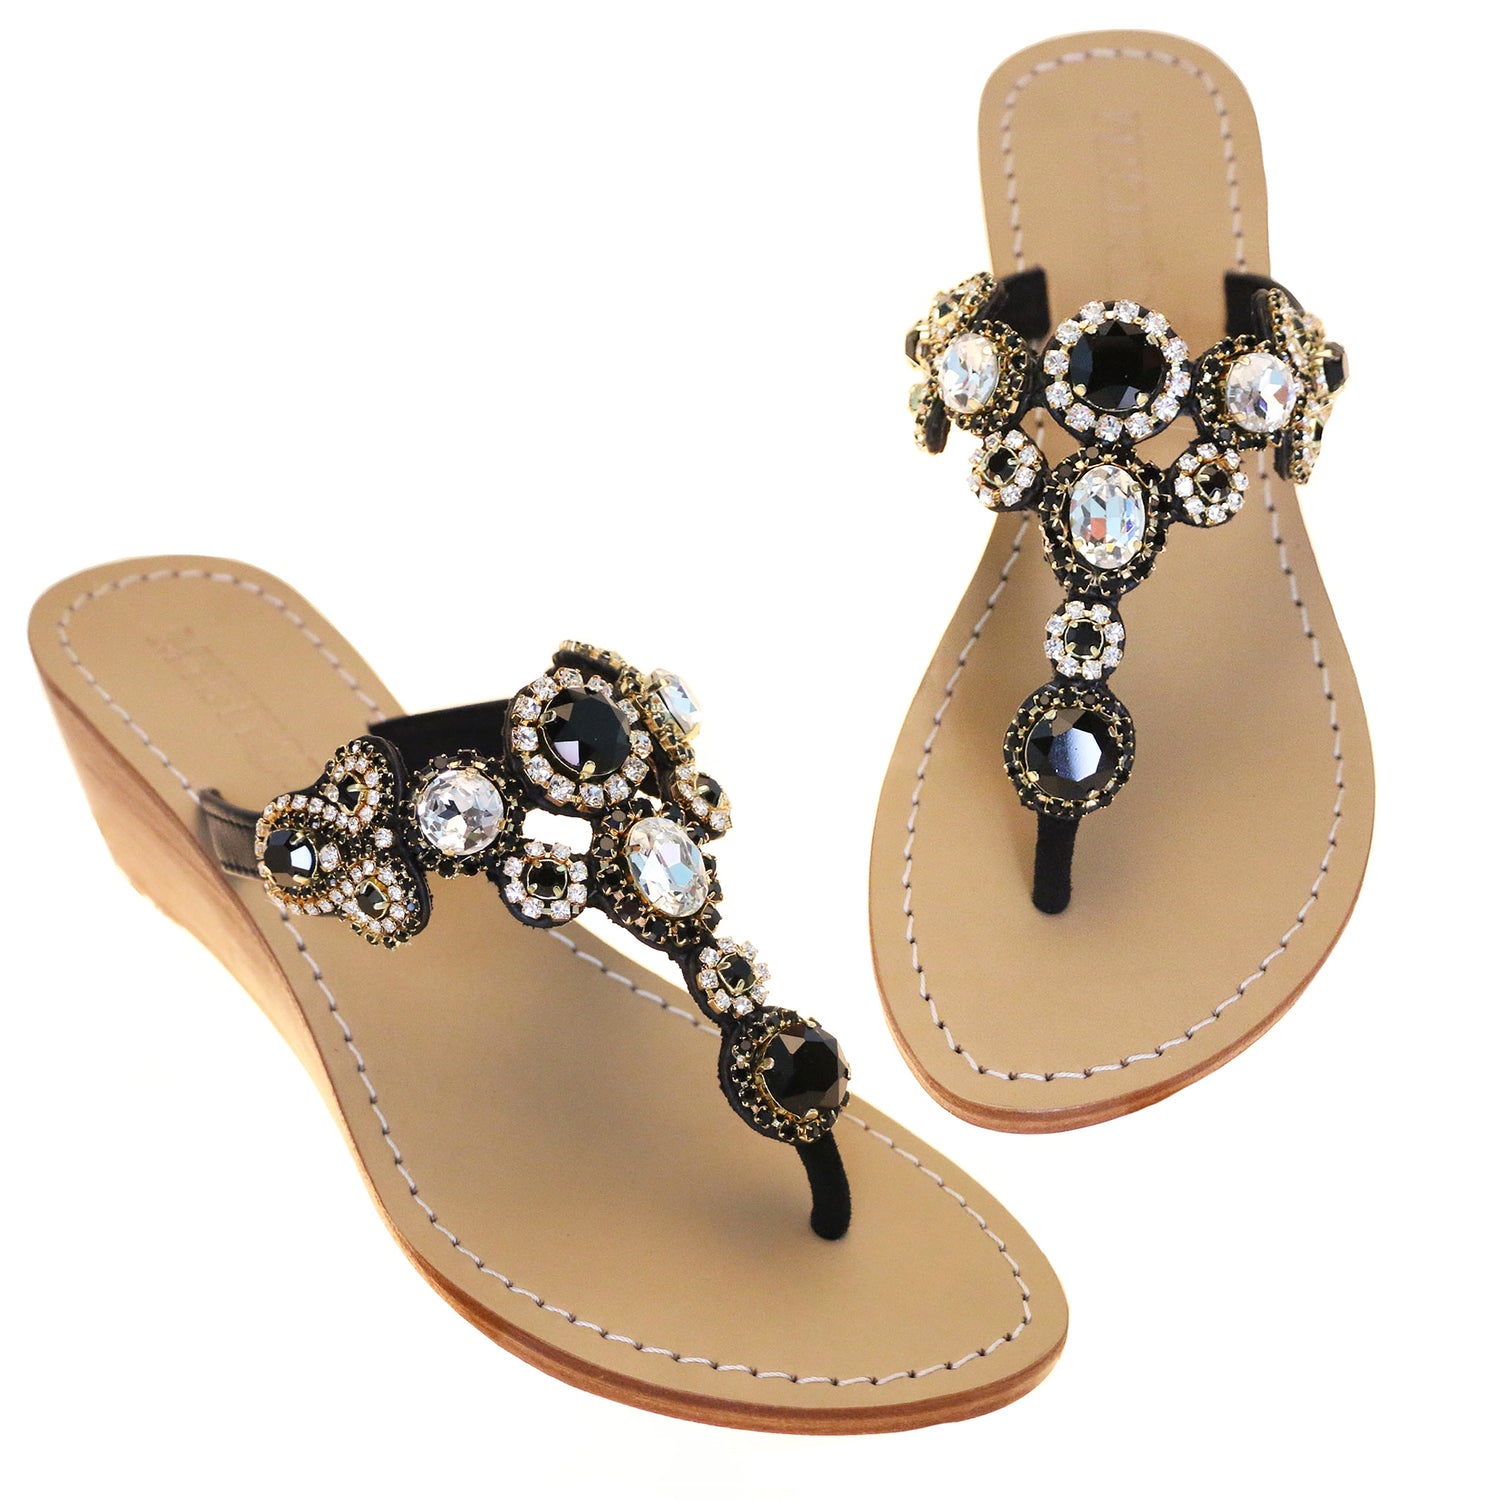 Las Vegas - Women's Black Jeweled Wedge Sandals | Mystique Sandals